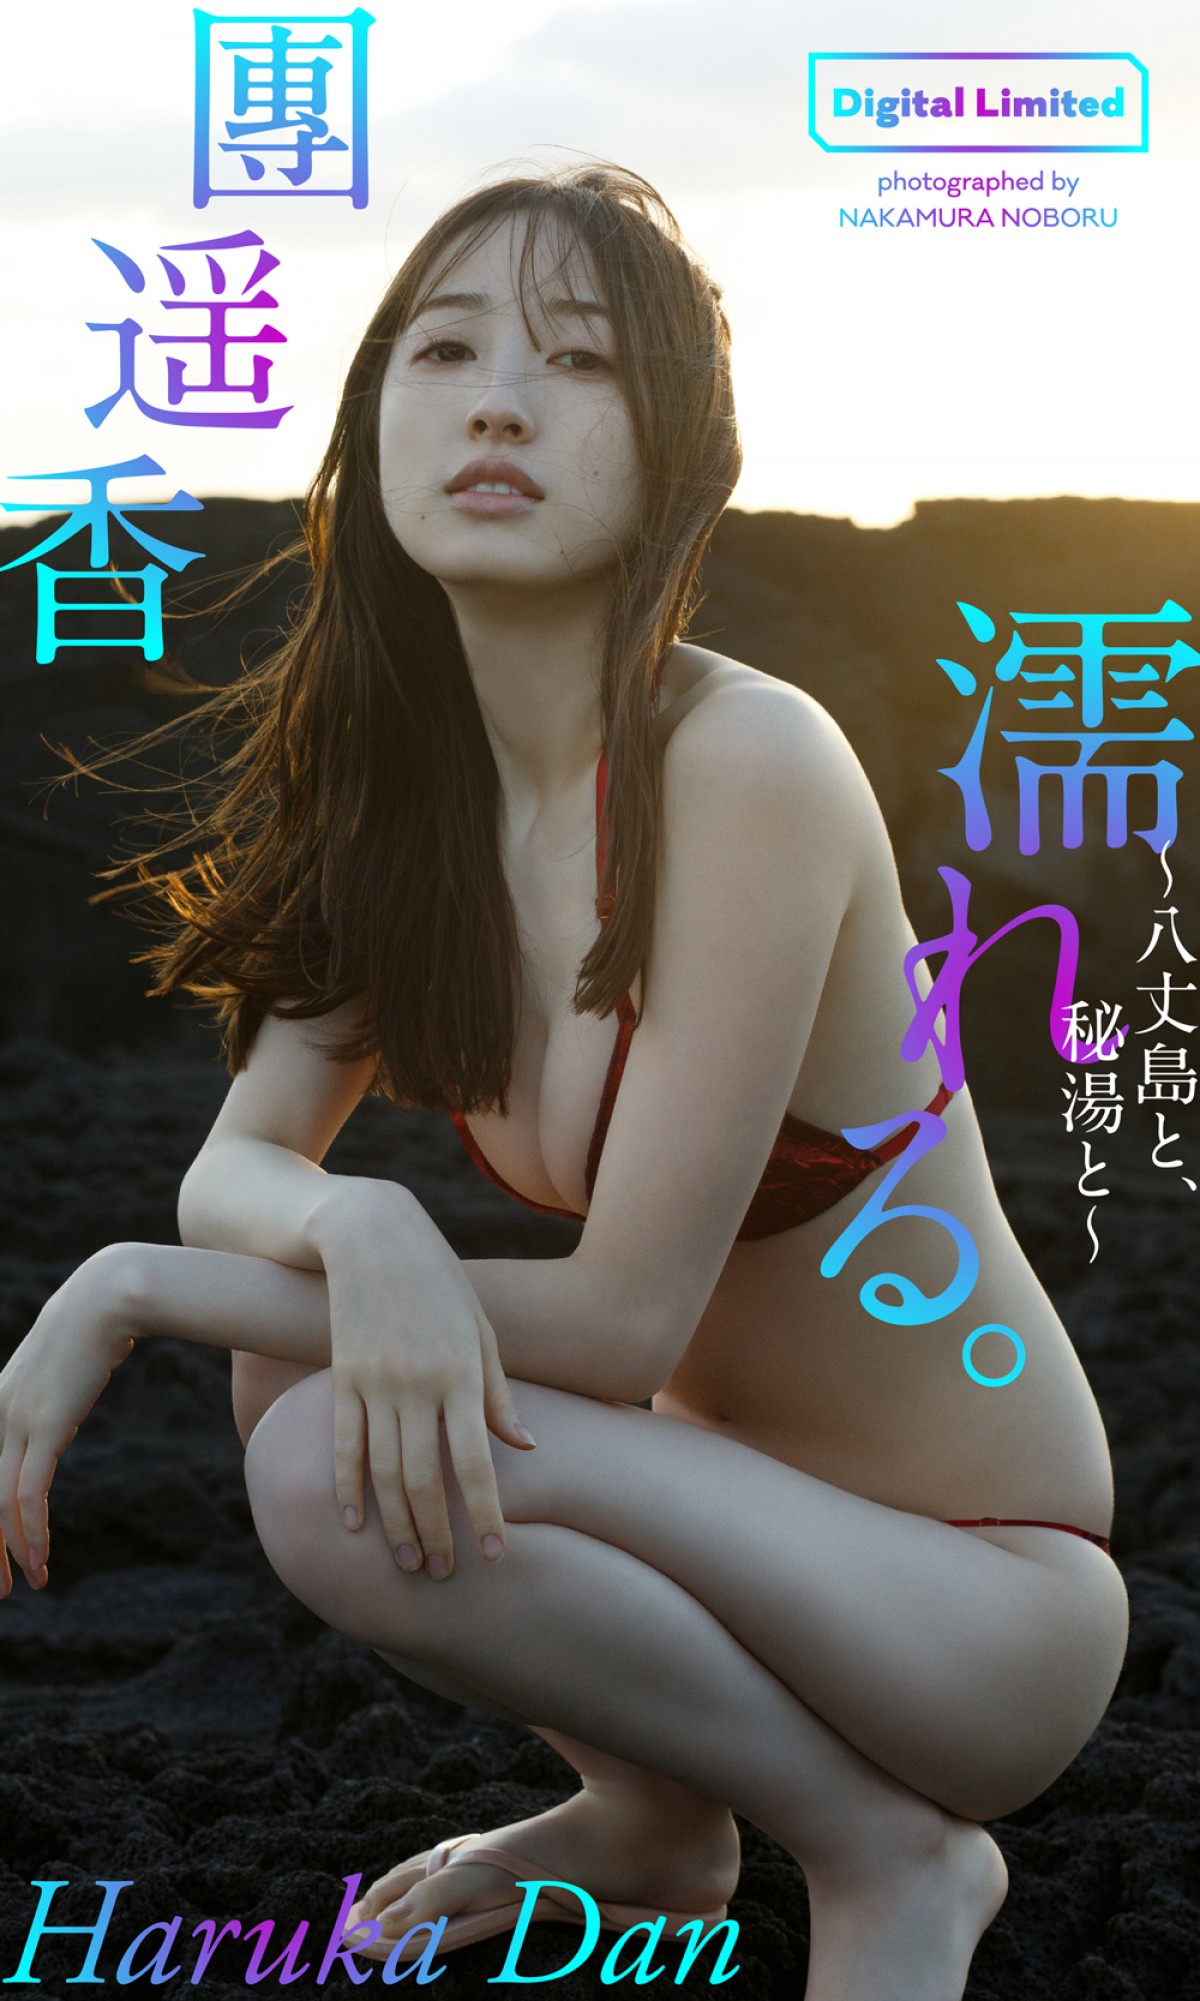 人気モデル・林田岬優、完全セルフプロデュースのグラビアで笑顔